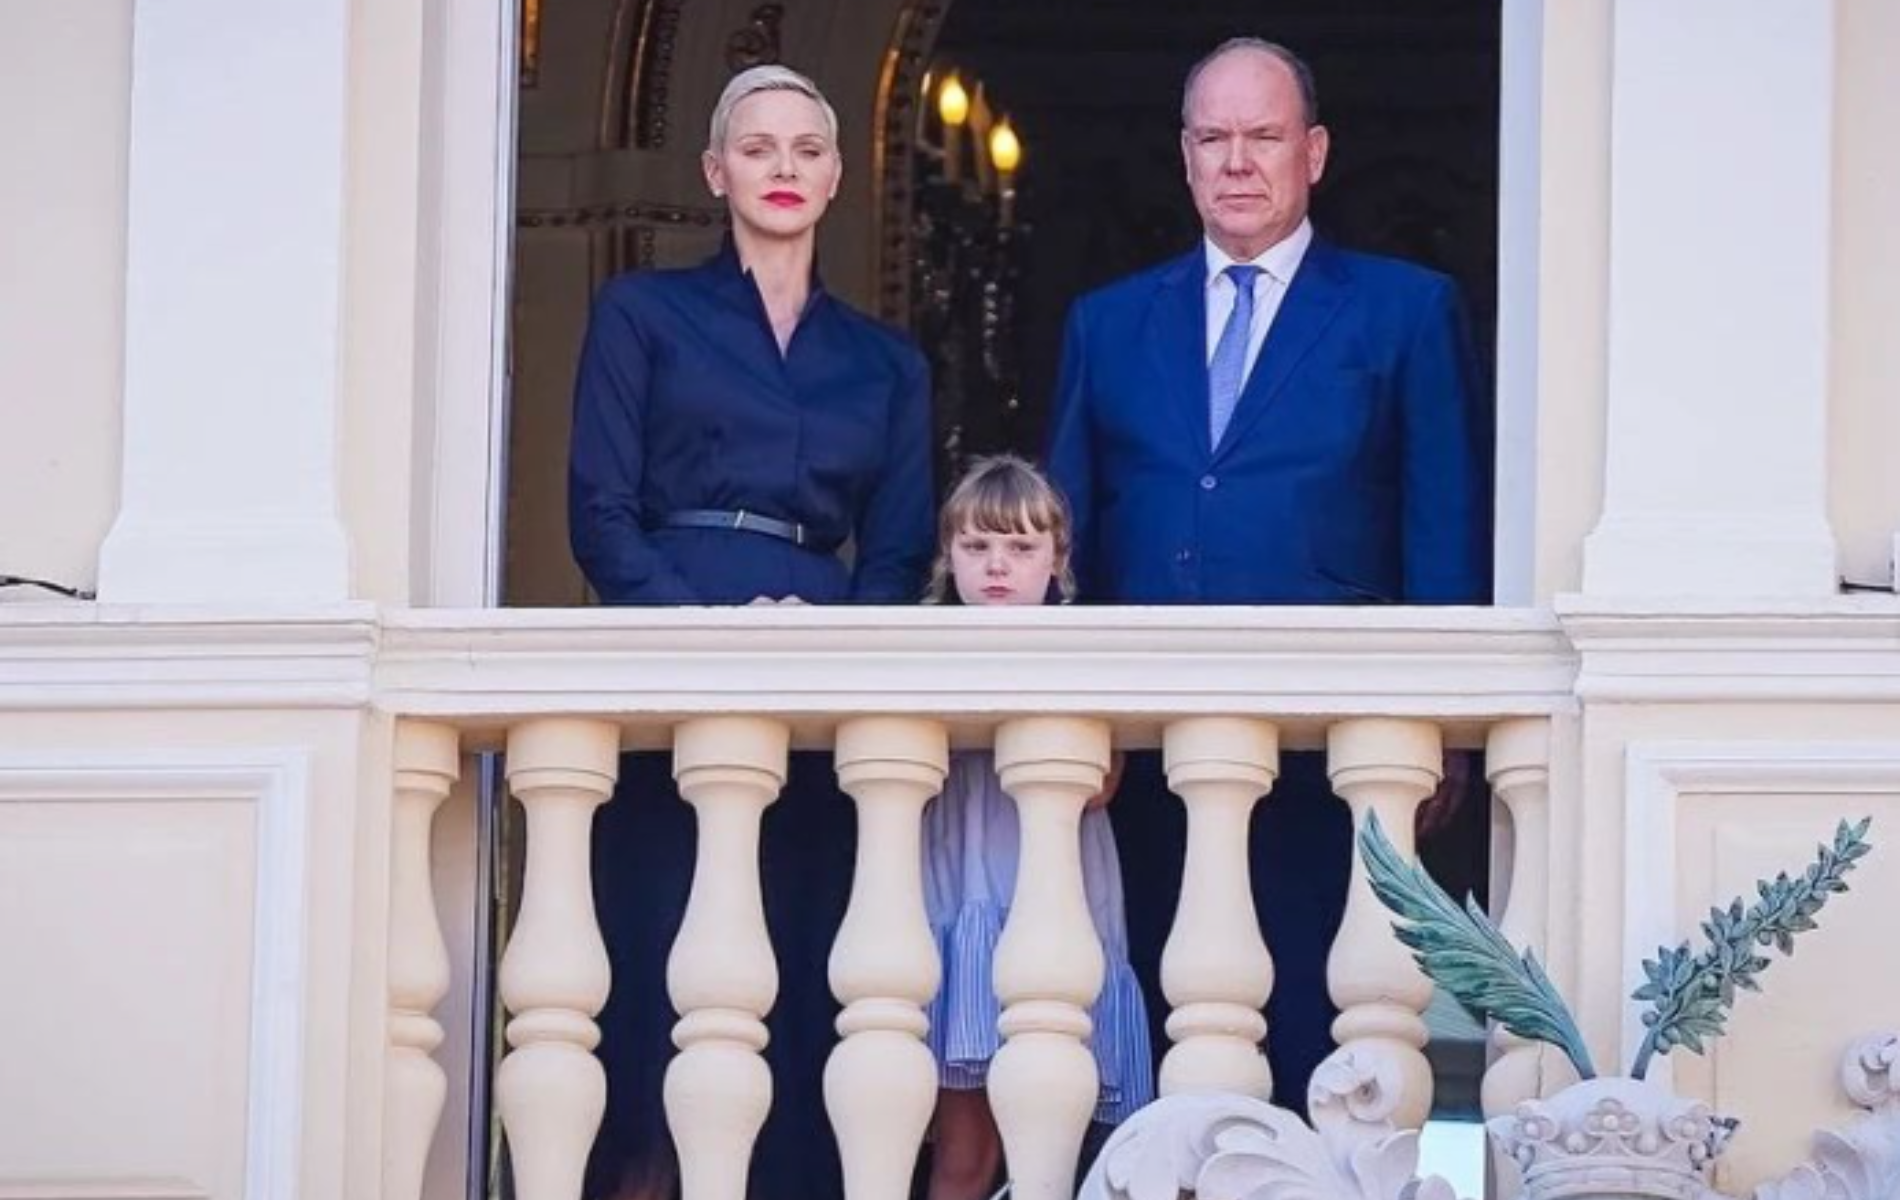 Pleine de gravité, Charlene de Monaco réapparaît sur le balcon princier